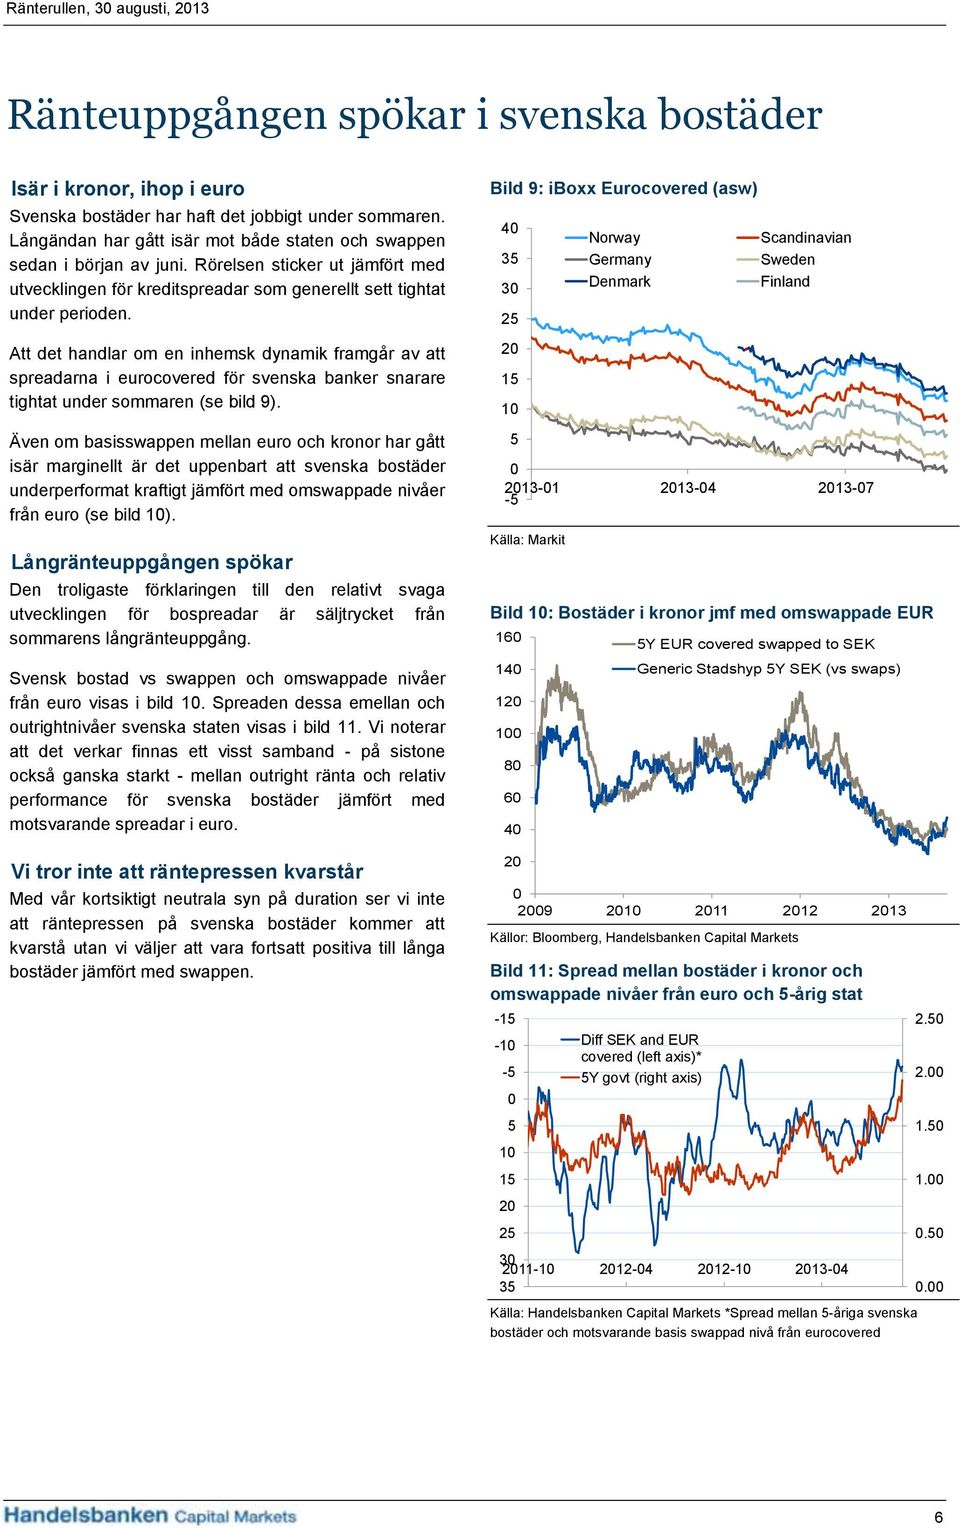 Att det handlar om en inhemsk dynamik framgår av att spreadarna i eurocovered för svenska banker snarare tightat under sommaren (se bild 9).